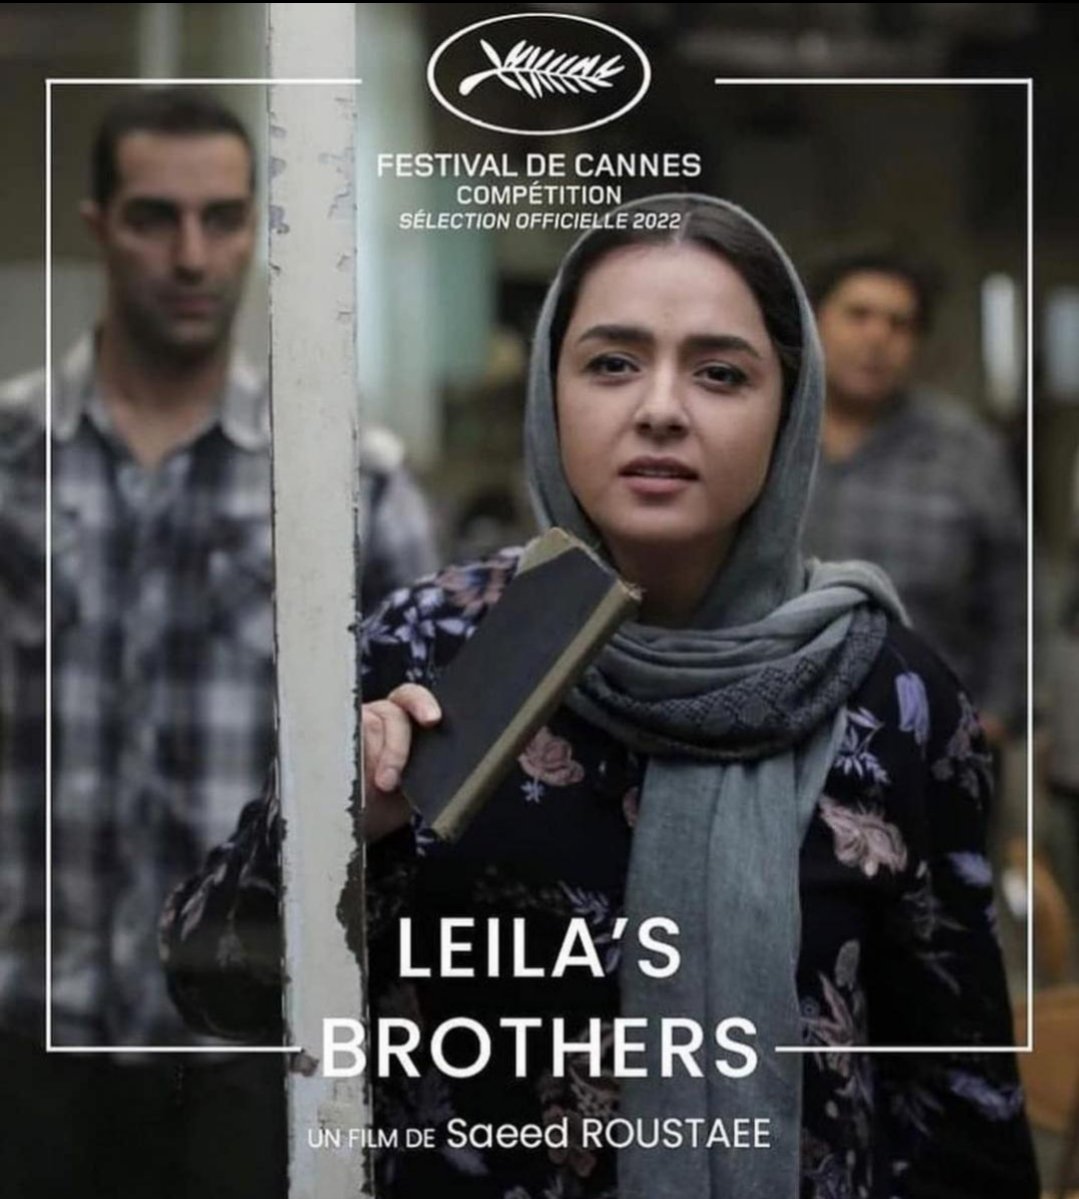 El cine iraní nunca defrauda y #LaFamiliaDeLeila es capaz de captar y transmitir todas las aristas culturales, generacionales y socioeconómicas de una familia con sus desencuentros, diferencias, choques y empatías. Su trama verista y sus diálogos incisivos no os darán tregua.